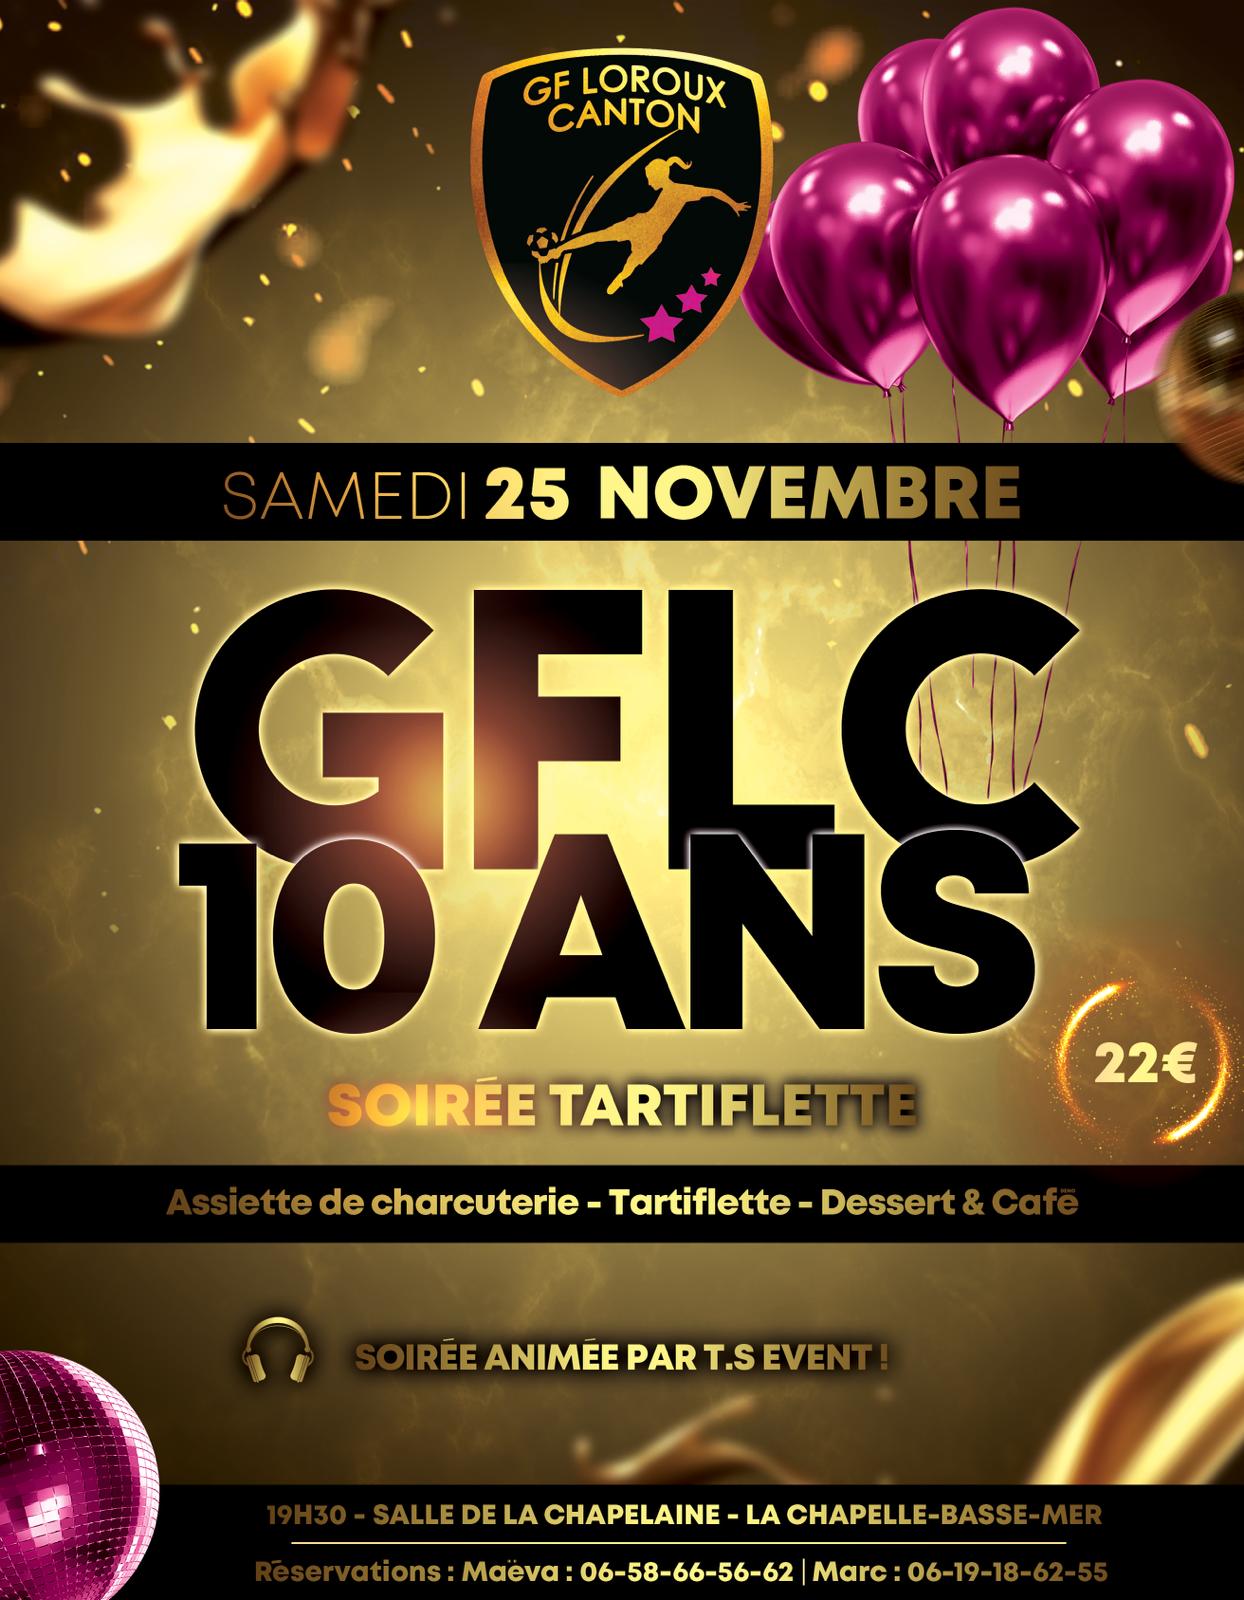 GFLC 10 ans soirée club llosc fcsjd